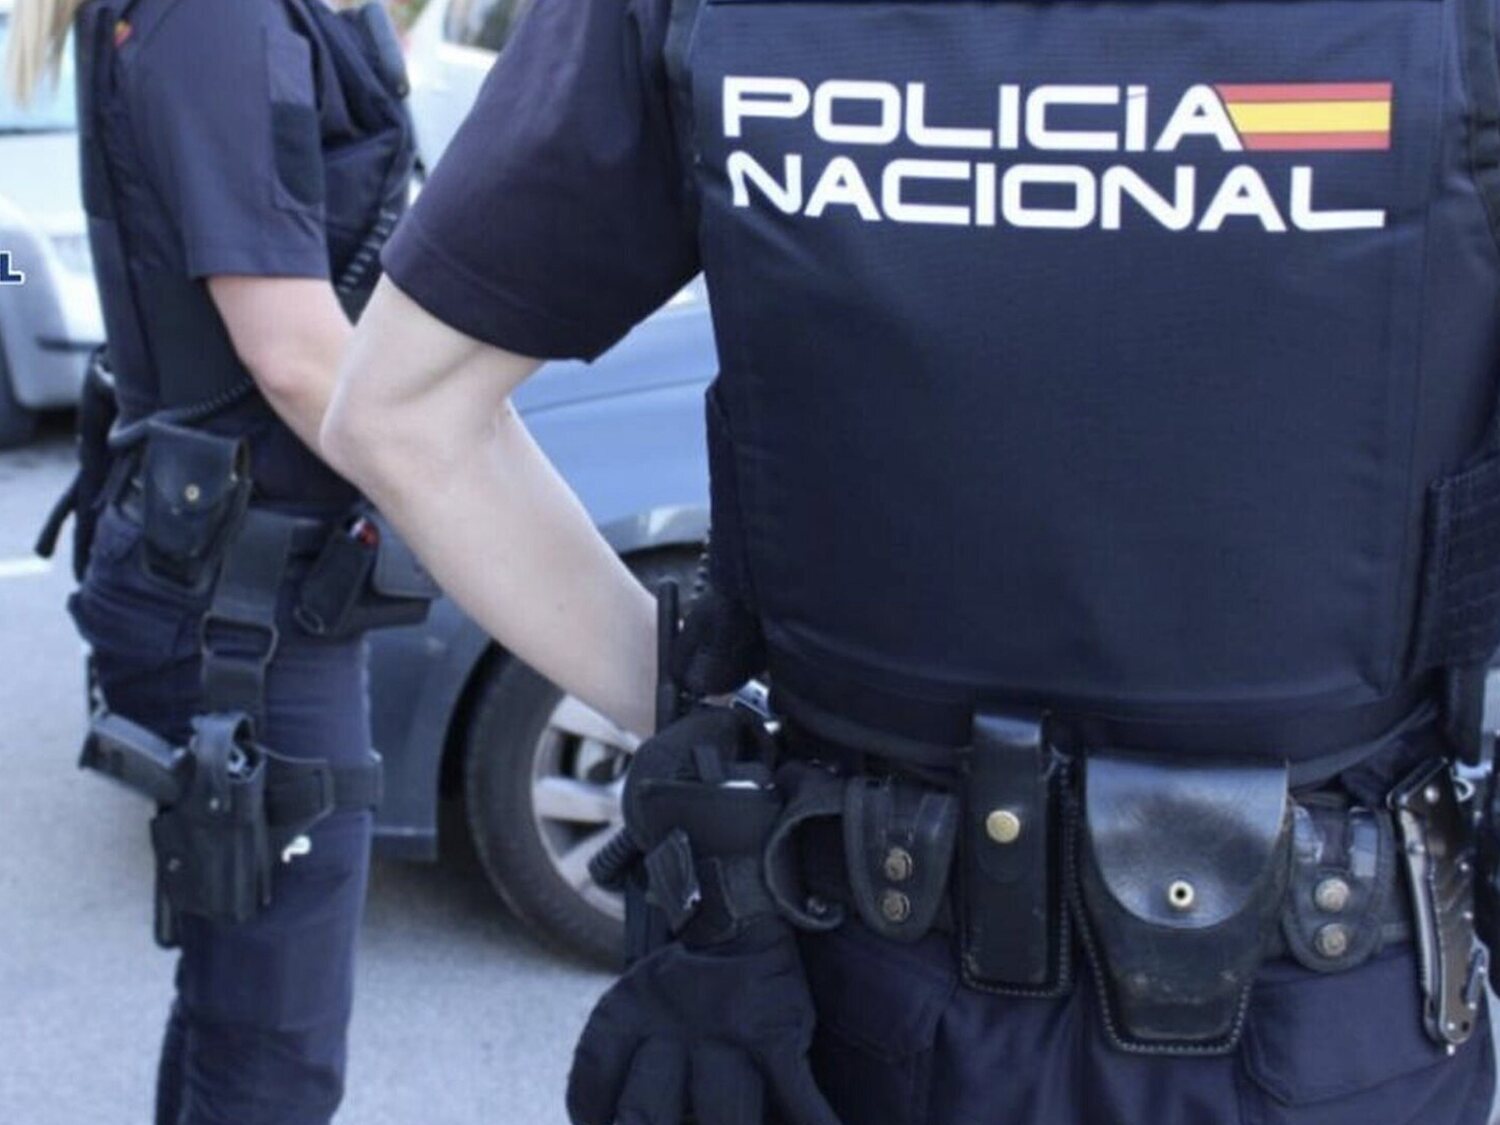 Detienen en Gijón a un hombre que entró a un bar con una pistola: "No quiero rojos de mierda"